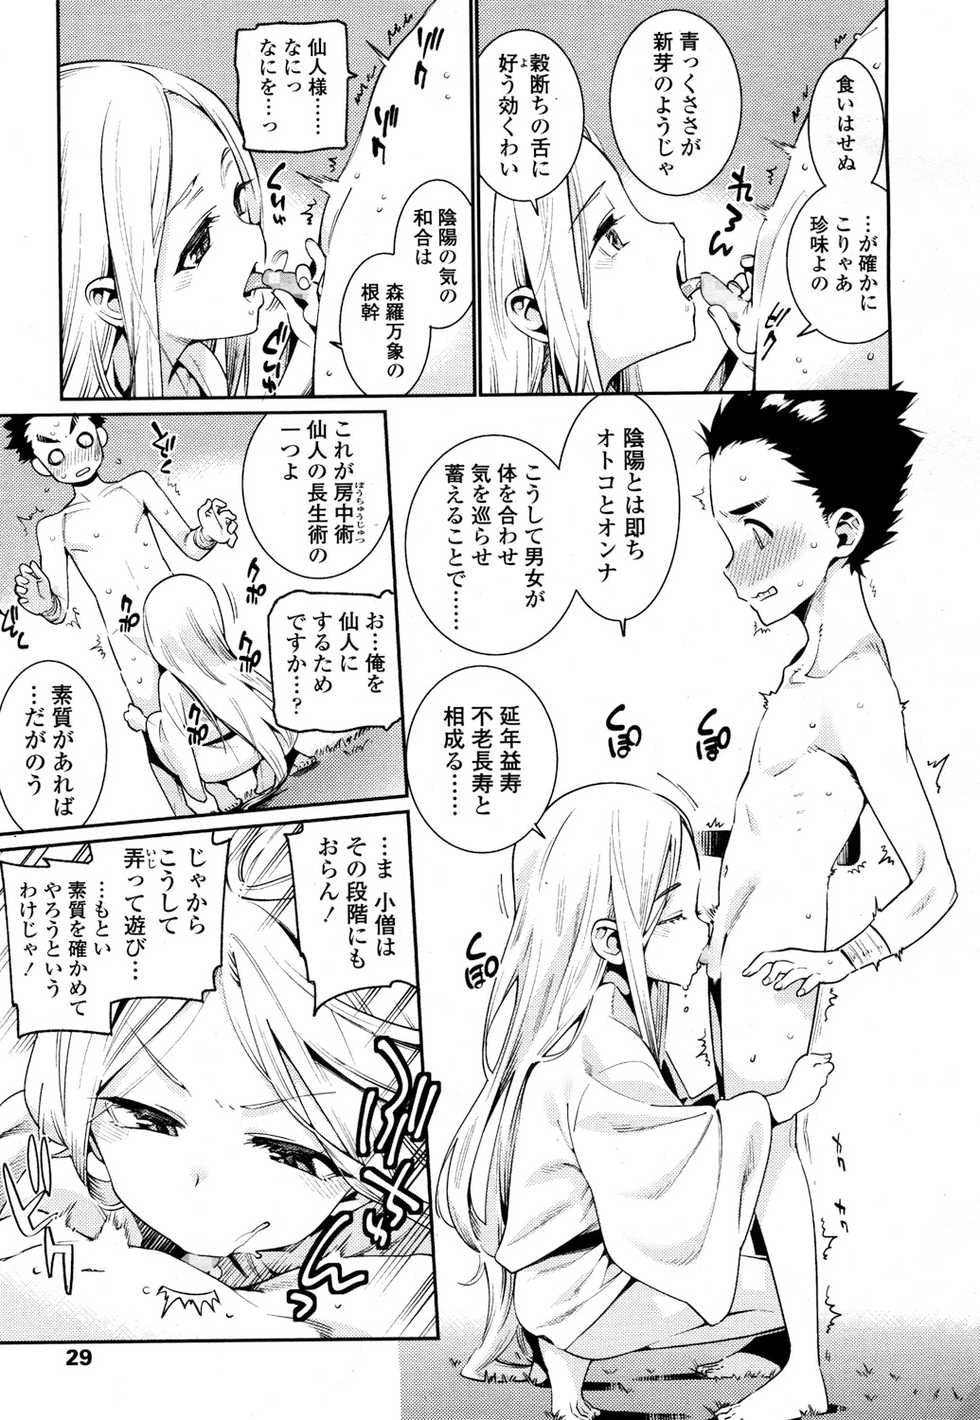 Towako 2 [Digital] - Page 26